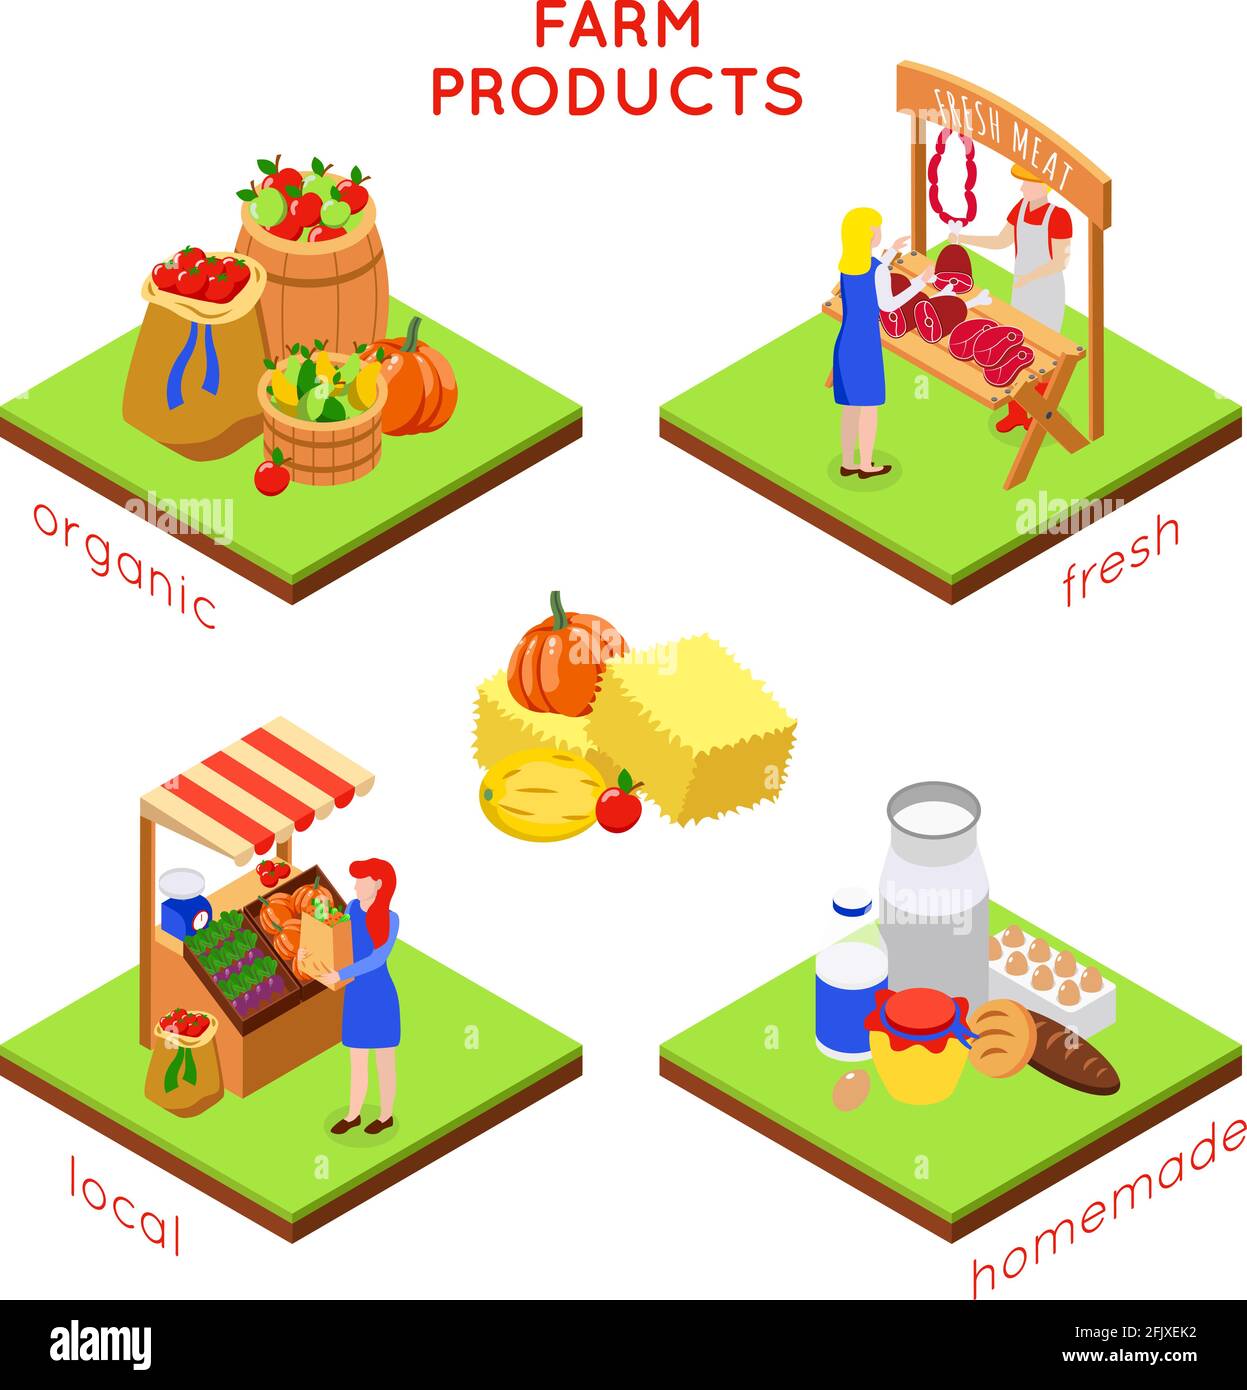 Farm lokalen Markt isometrisches 4x1 Design-Konzept mit Kompositionen von Lebensmittel Bilder menschliche Zeichen und Text Vektor Illustration Stock Vektor